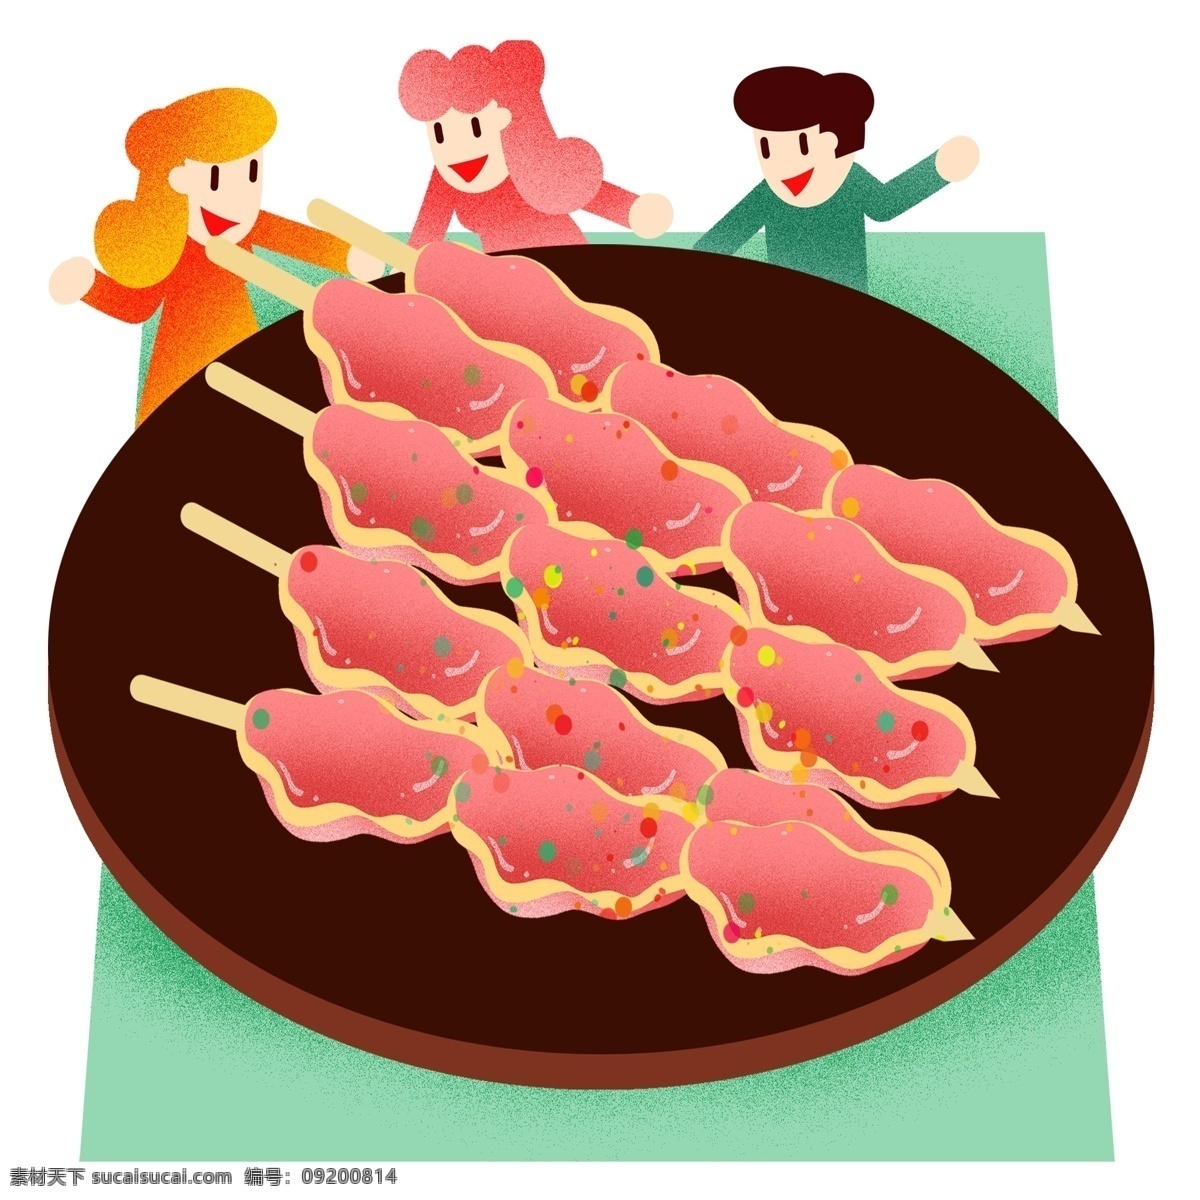 夏季 撸 串烧 烤肉 串 聚会 撸串 吃肉 小清新 夏天